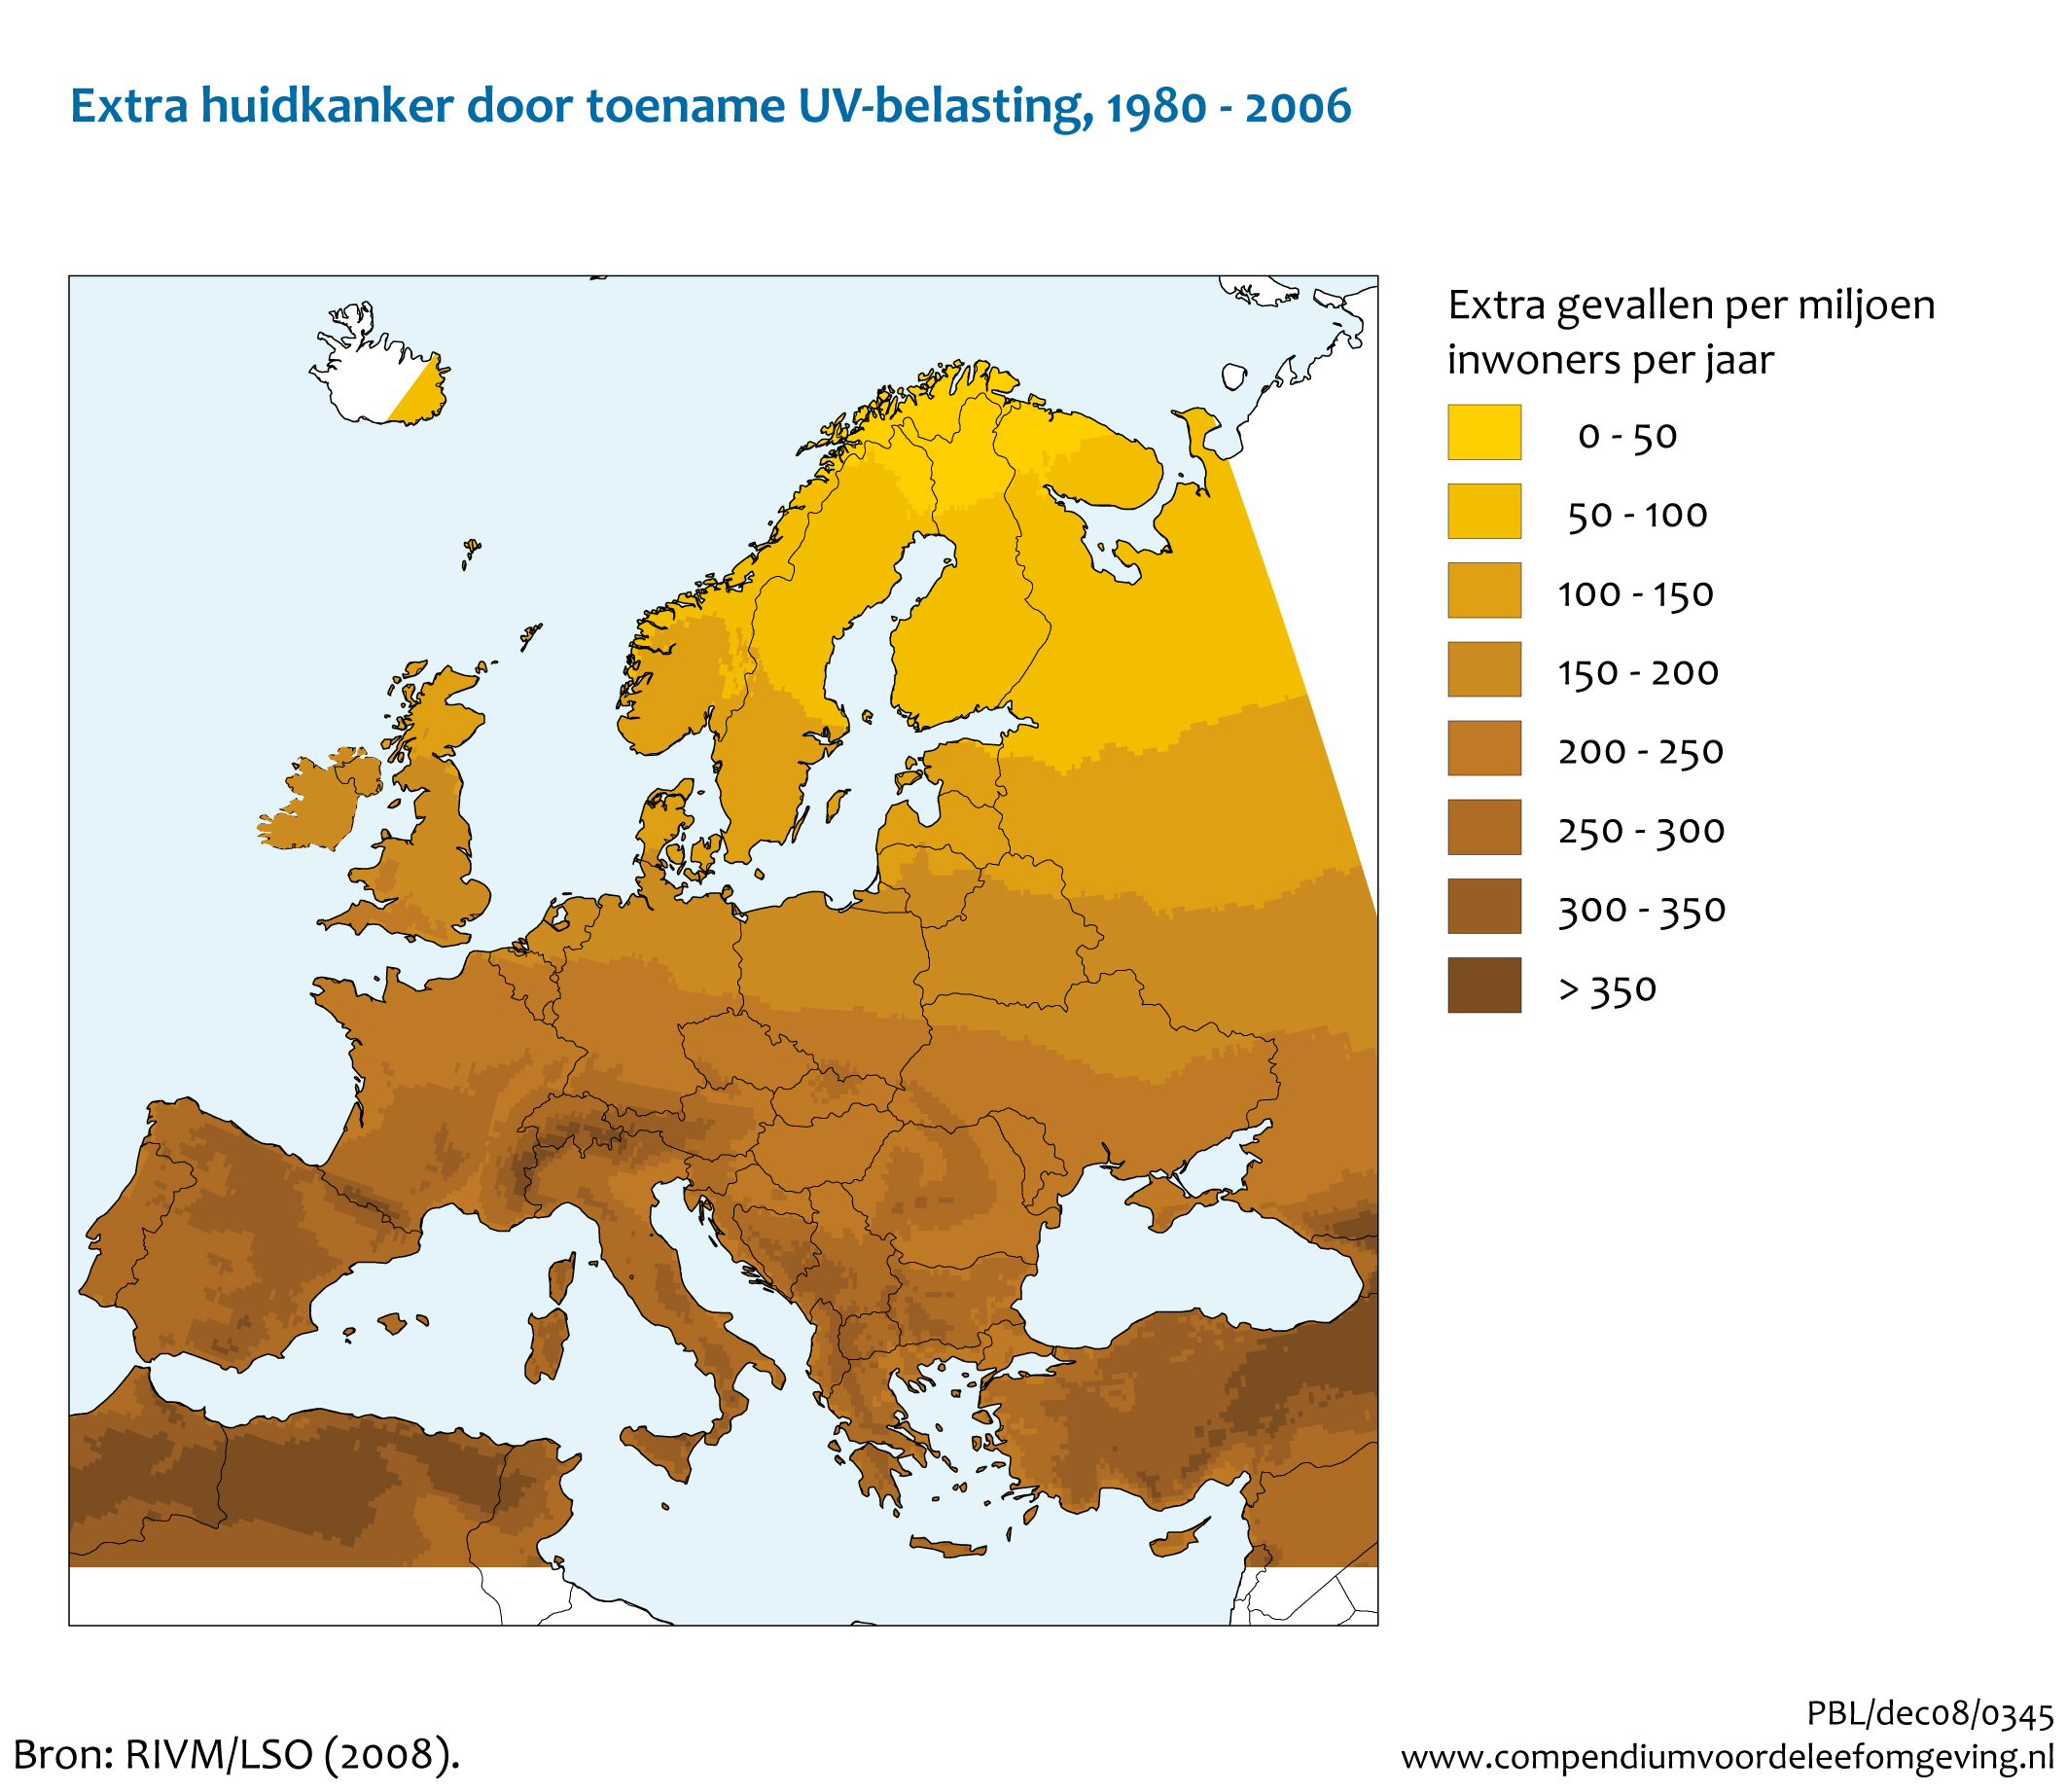 Figuur Extra huidkankerrisico in Europa door toename van UV-straling. In de rest van de tekst wordt deze figuur uitgebreider uitgelegd.